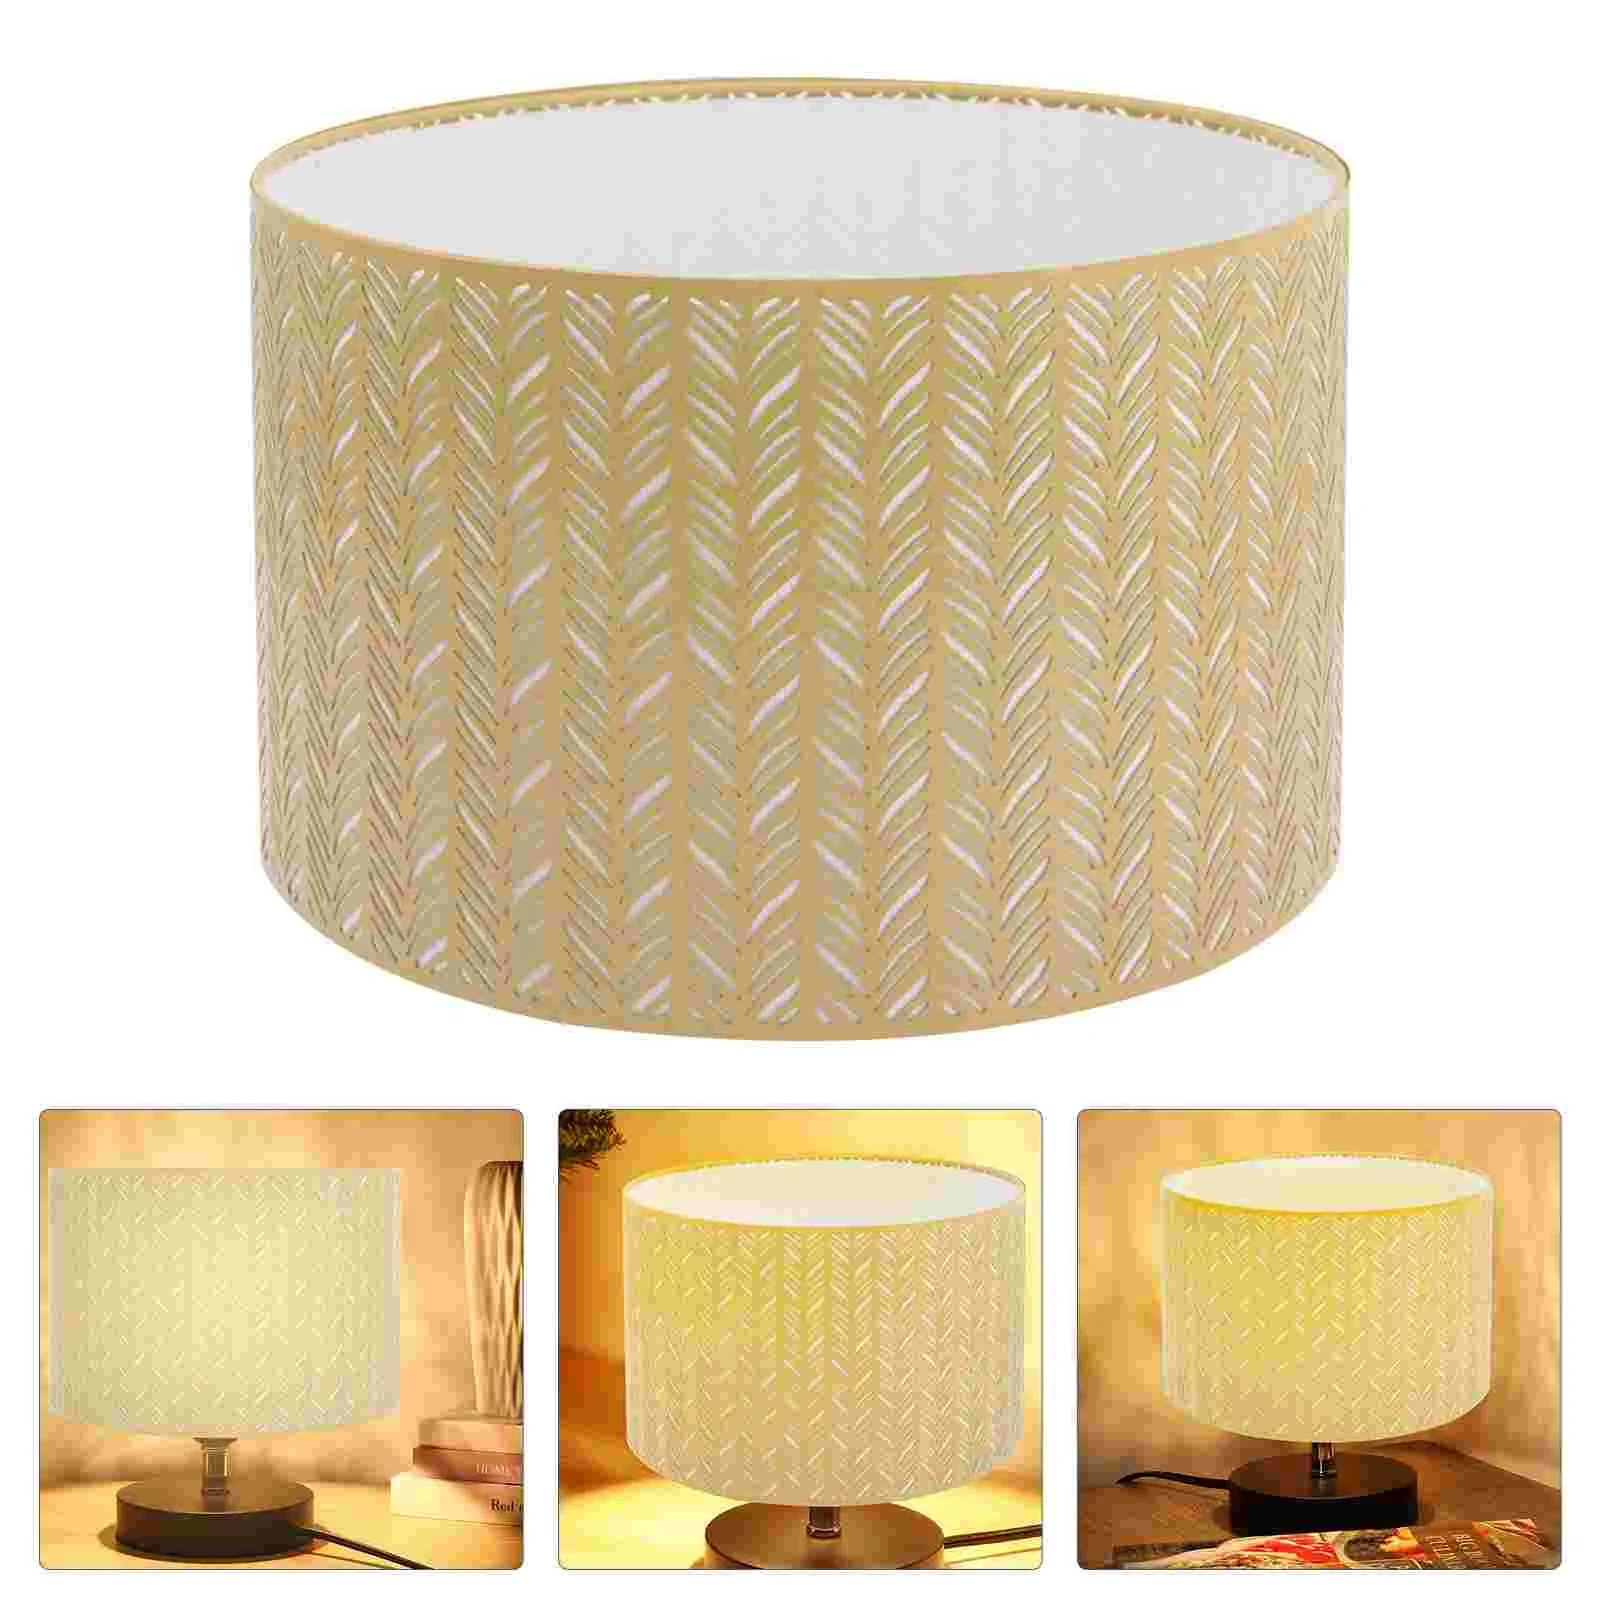 

Декоративная лампа: ажурный сменный навес лампы E27/ E14, зажим на лампочке, подвесной светильник для стола, стены, пола, Золотой